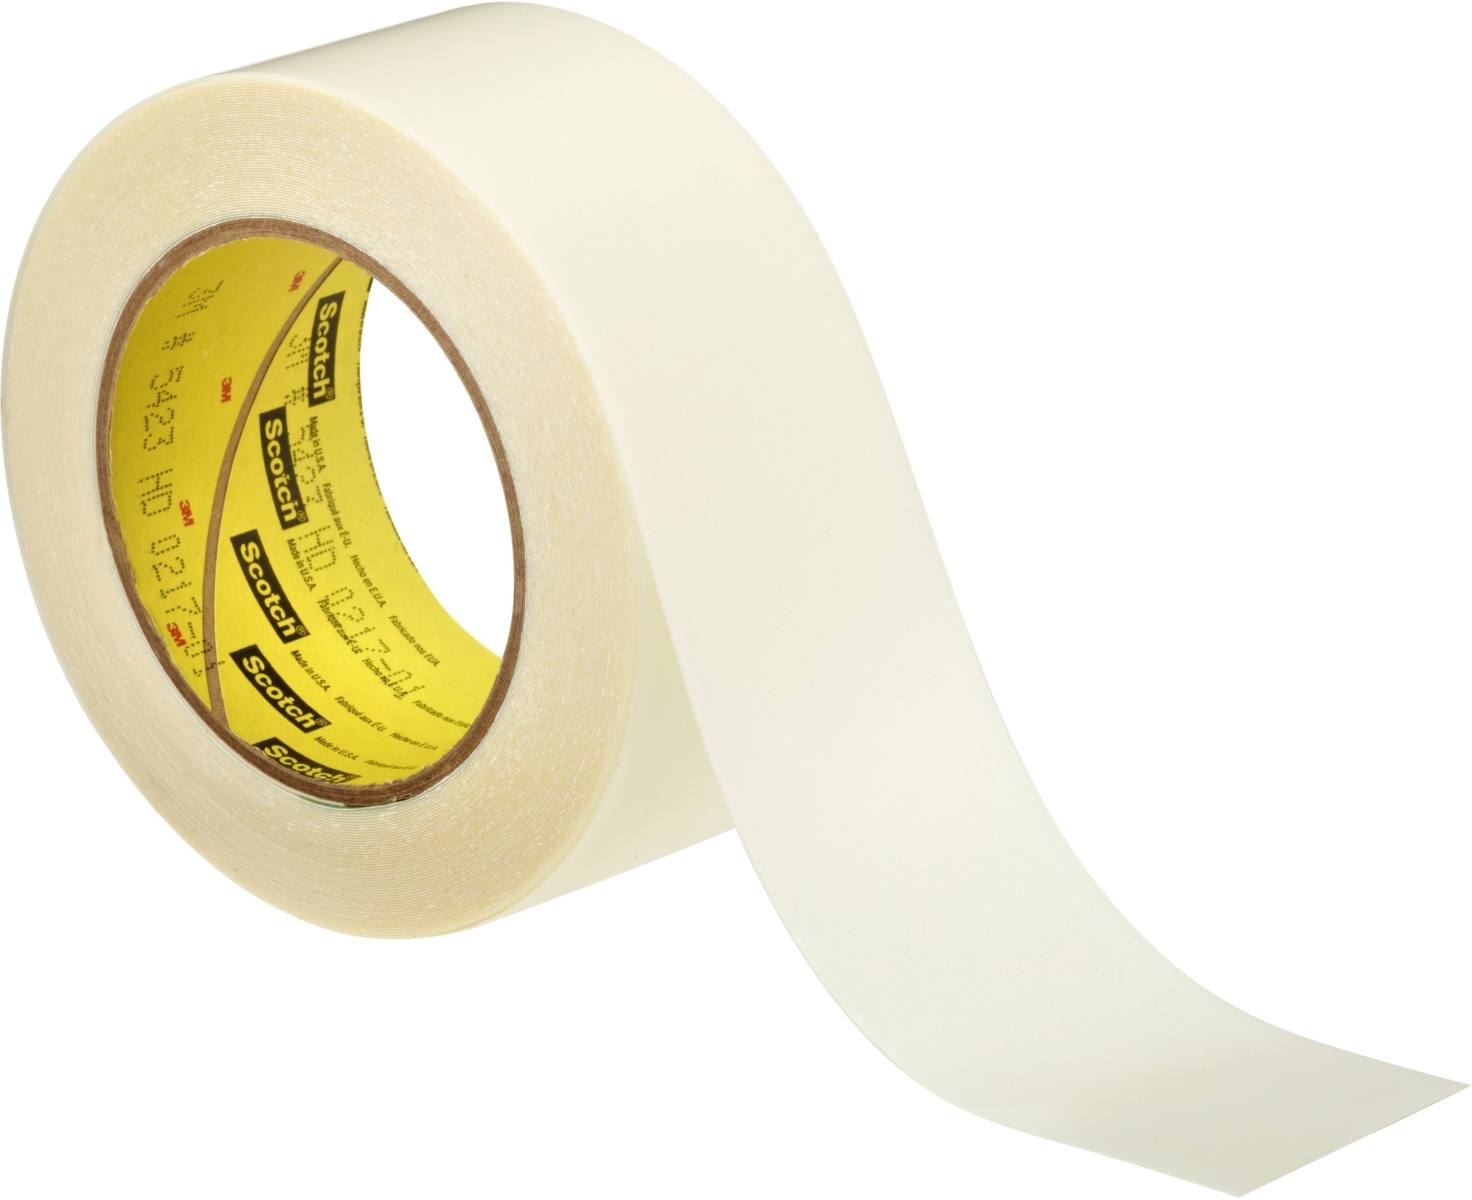 3M 5425 UHMW polyethylene sliding tape 9mmx33m, 0.11mm, acrylate